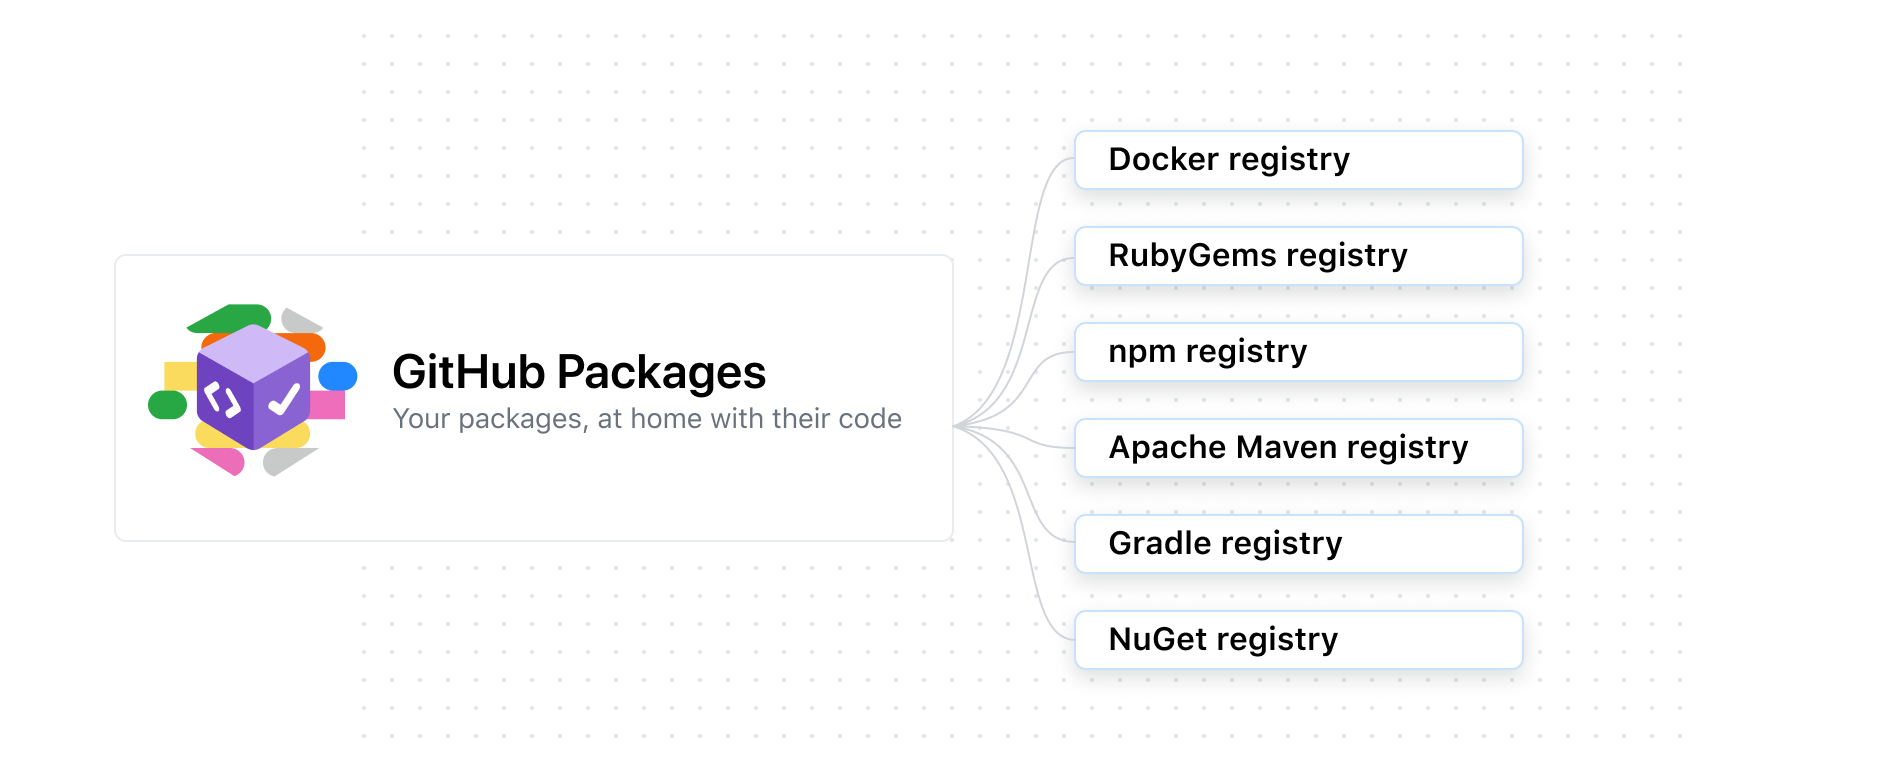 Diagram showing packages support for Docker, RubyGems, npm, Apache Maven, Gradle, NuGet, and Docker